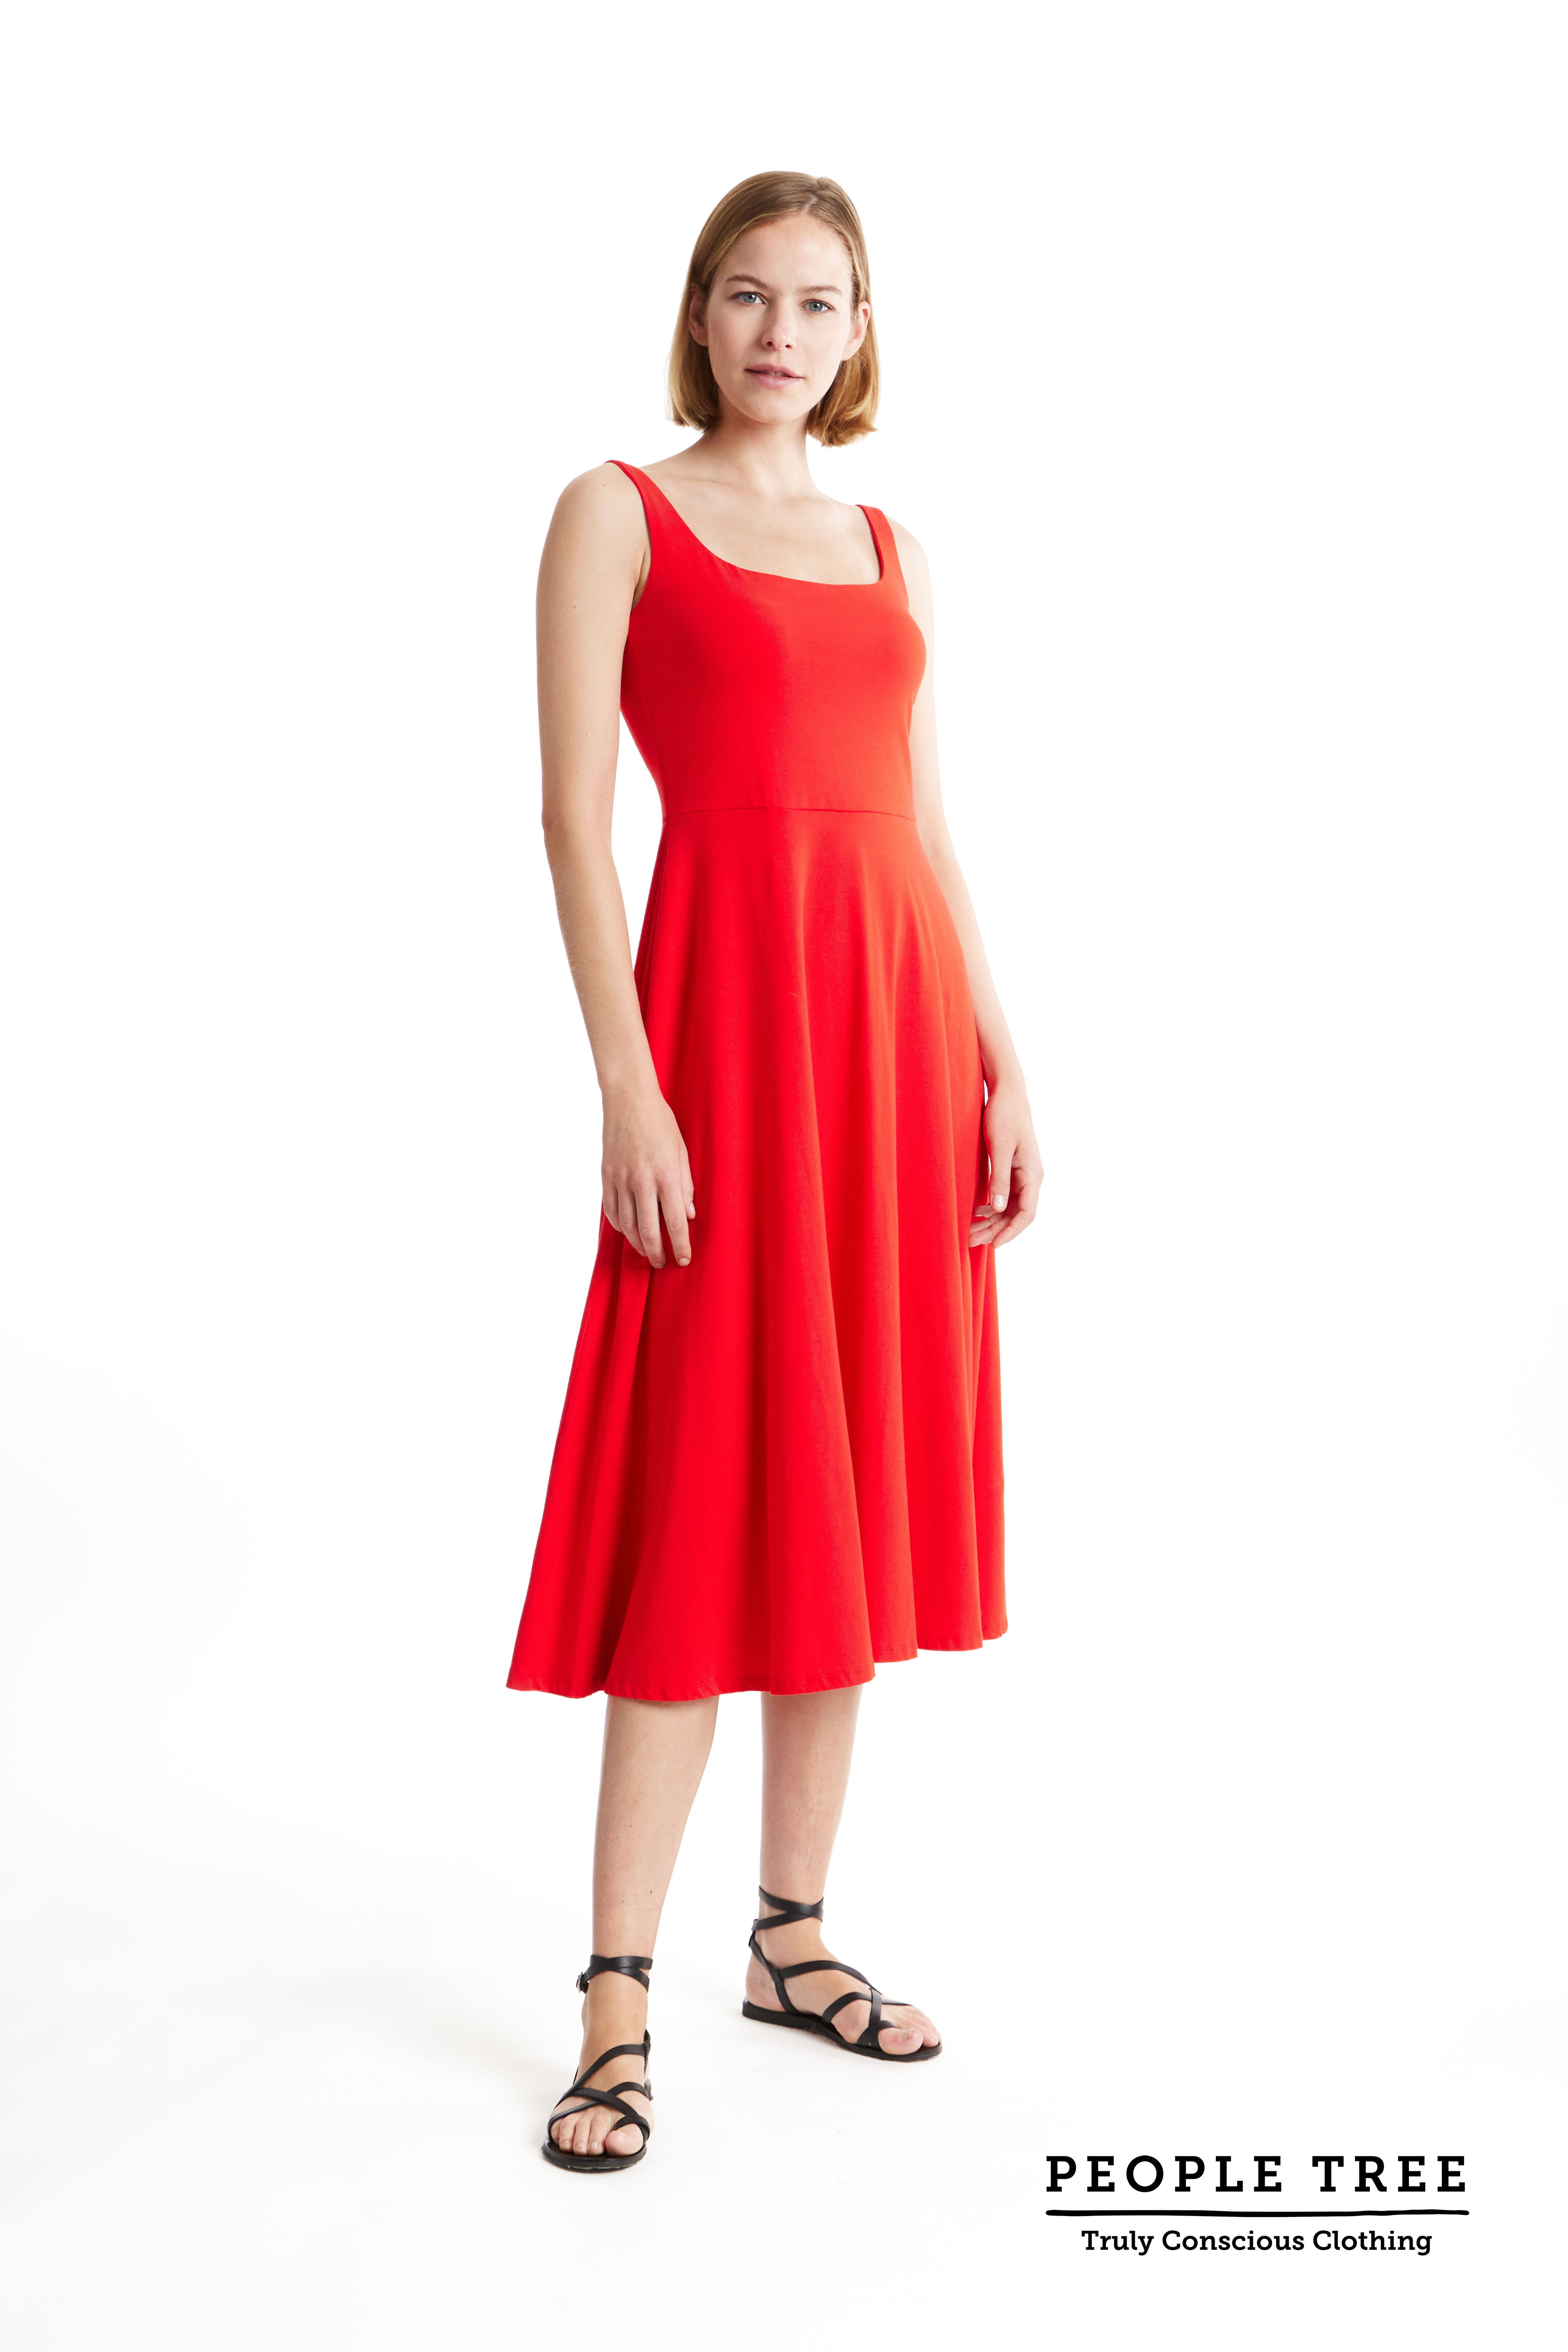 Sommerliches Träger-Kleid Tyra Red